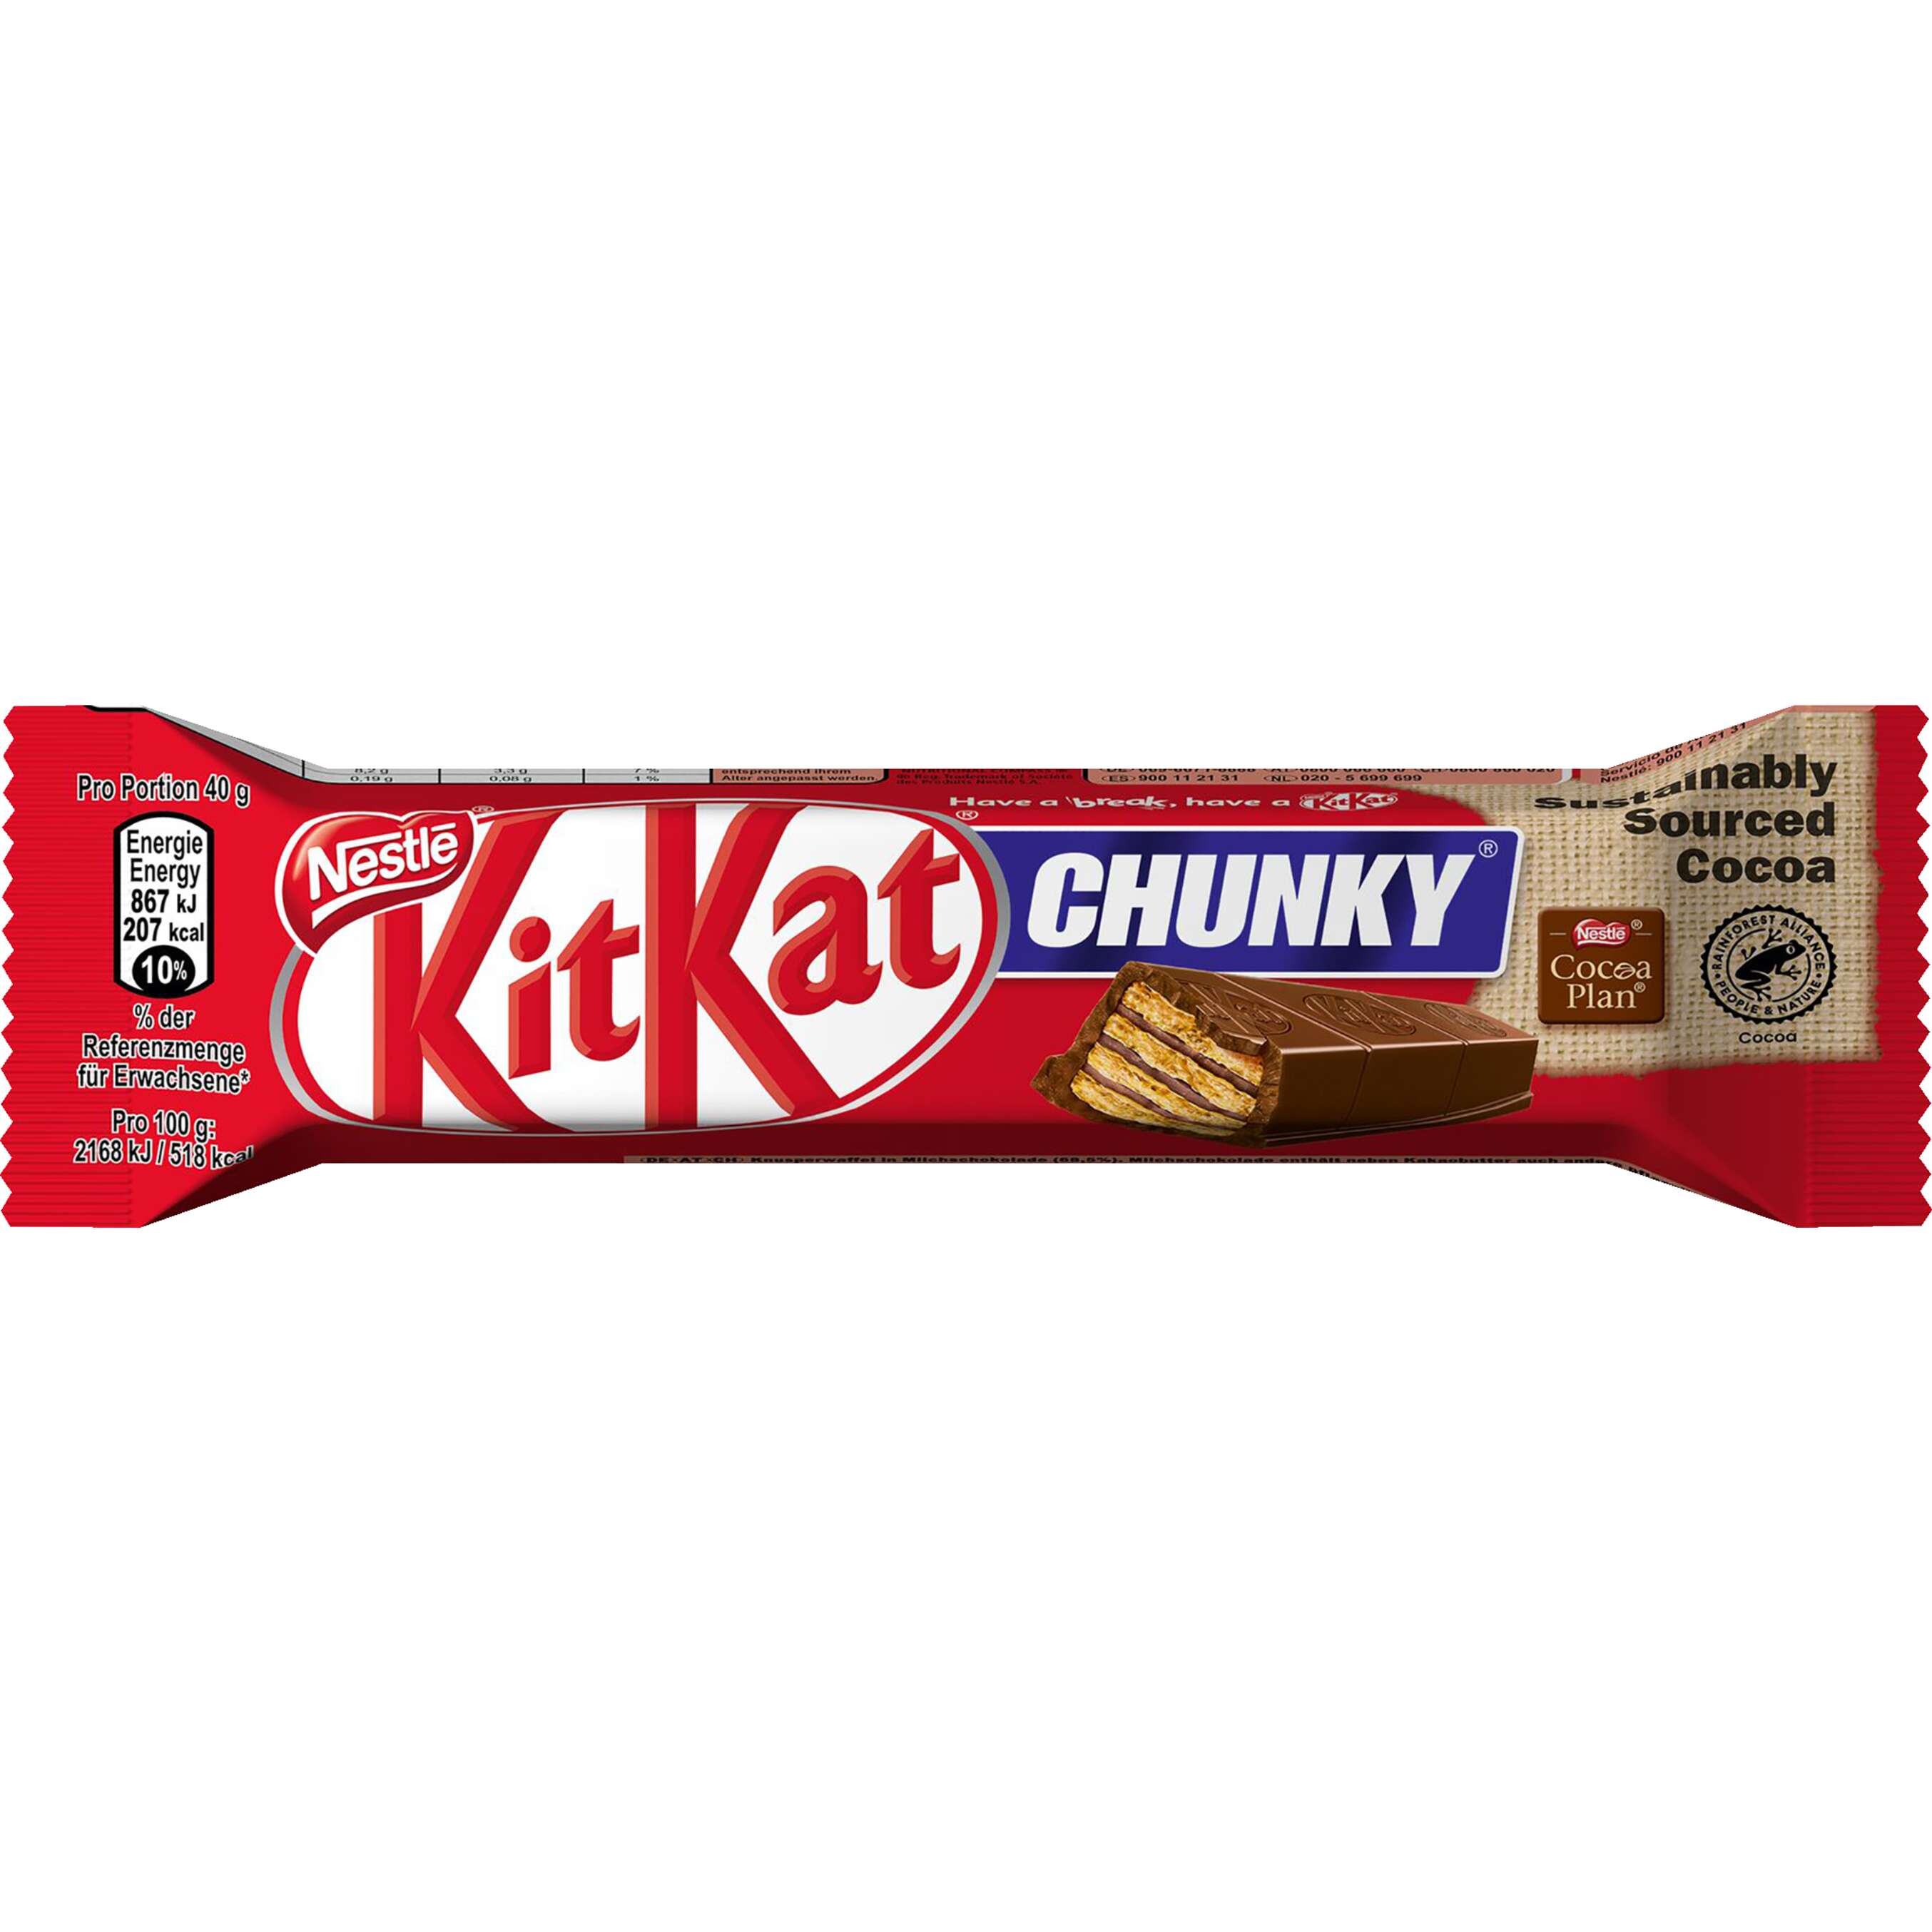 Zobrazit nabídku KitKat Čokoládová tyčinka